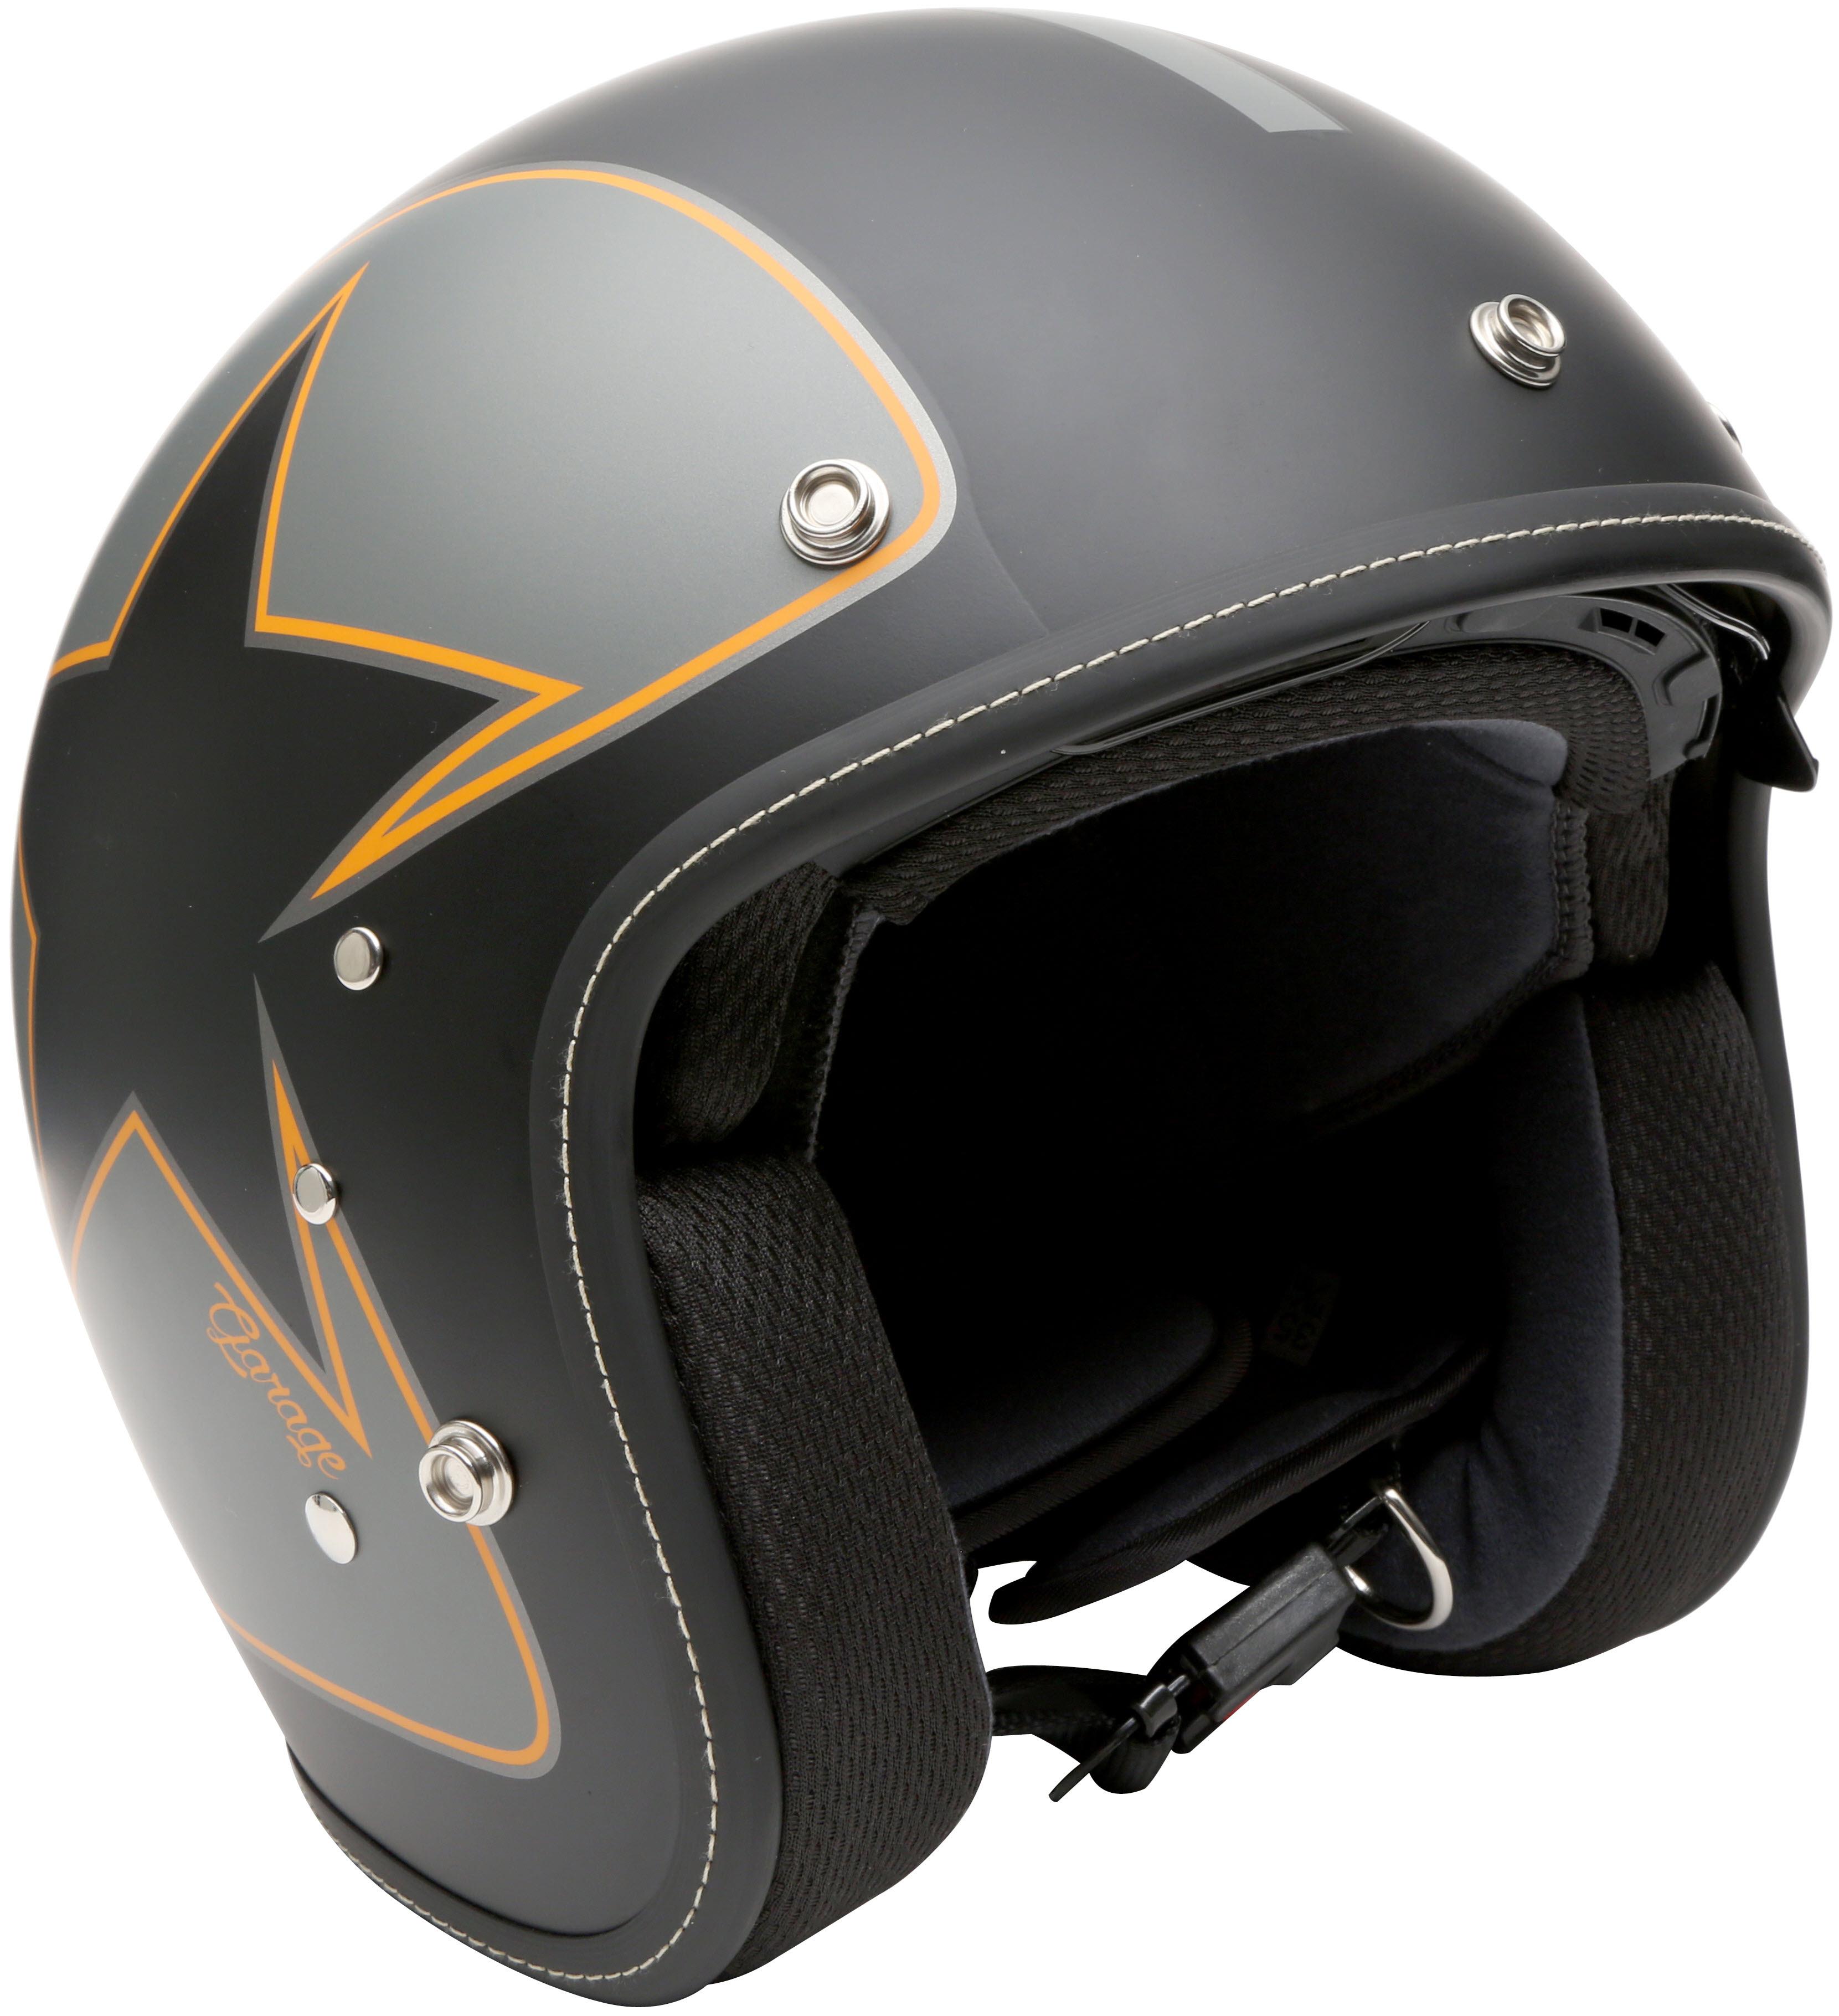 Duchinni Open Face Motorcycle Helmet - Matt Black/Orange, Large